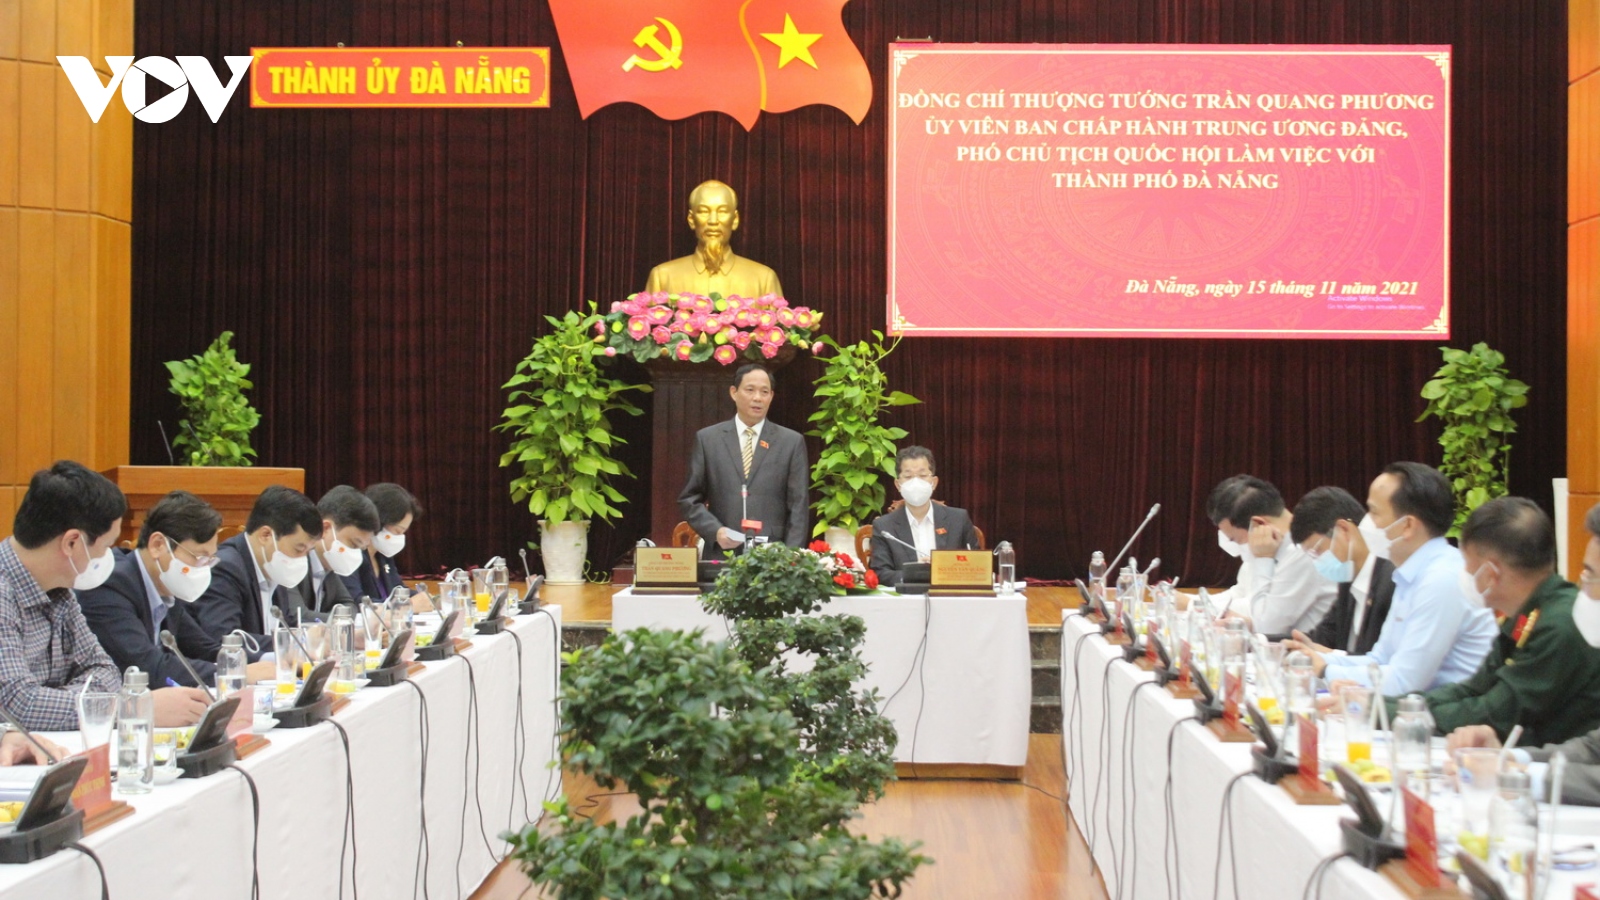 Phó Chủ tịch Quốc hội Trần Quang Phương đề nghị Đà Nẵng linh hoạt trong chống dịch